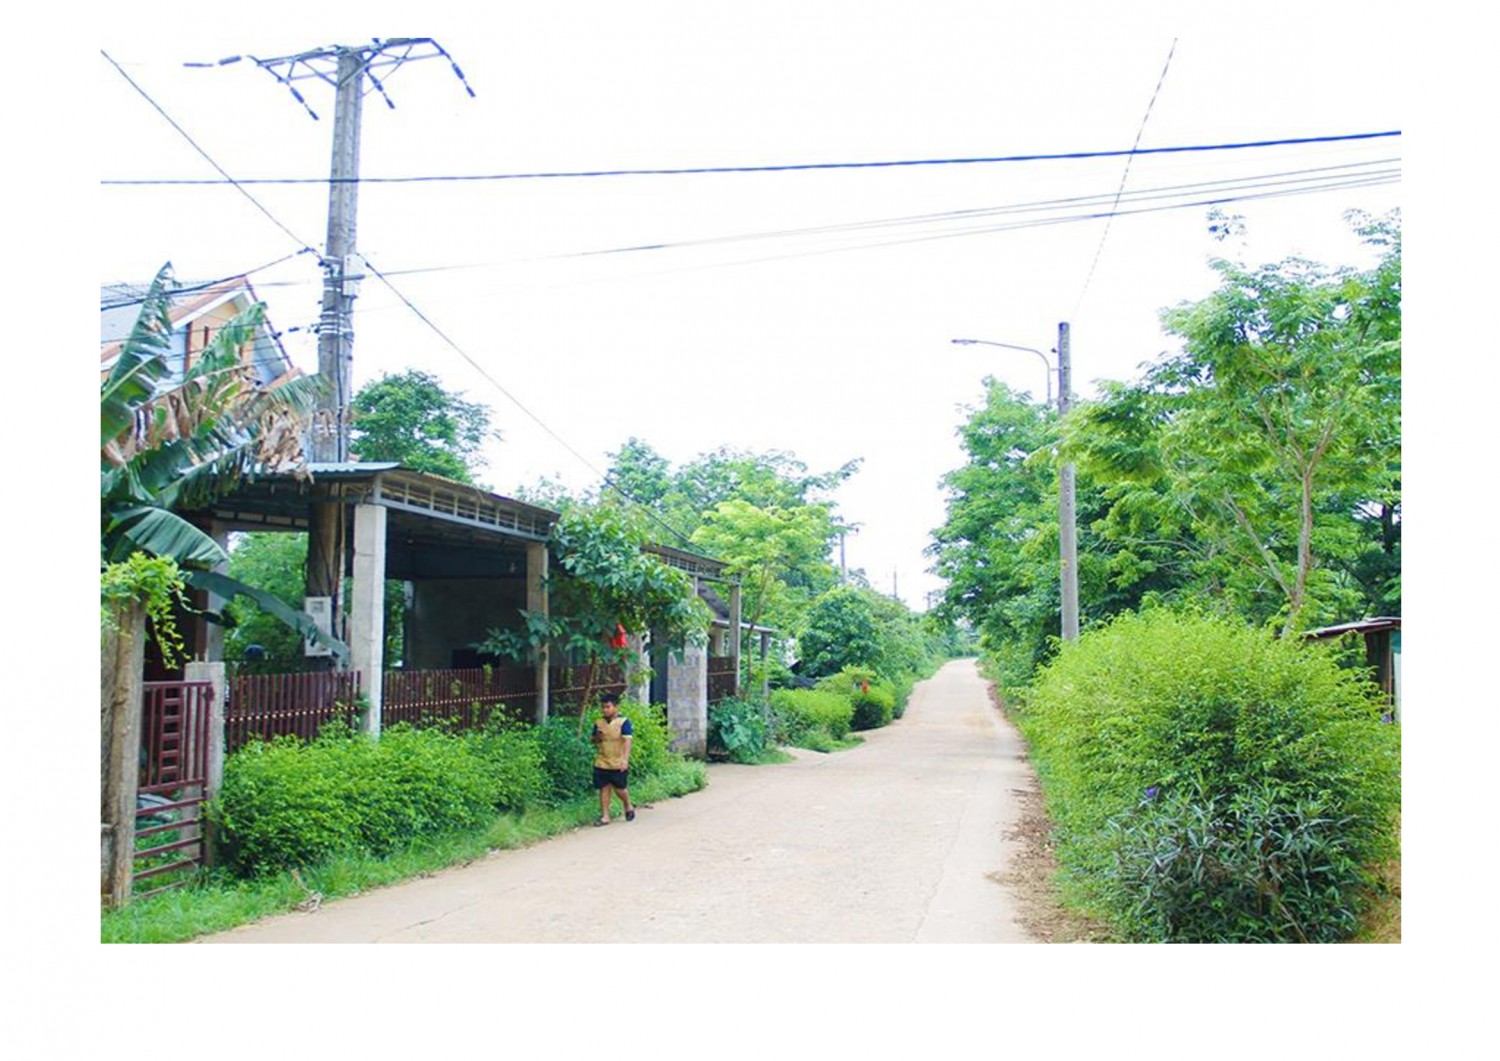 Hạ tầng giao thông, điện được đầu tư phục vụ đời sống người dân xã Linh Trường, huyện Gio Linh